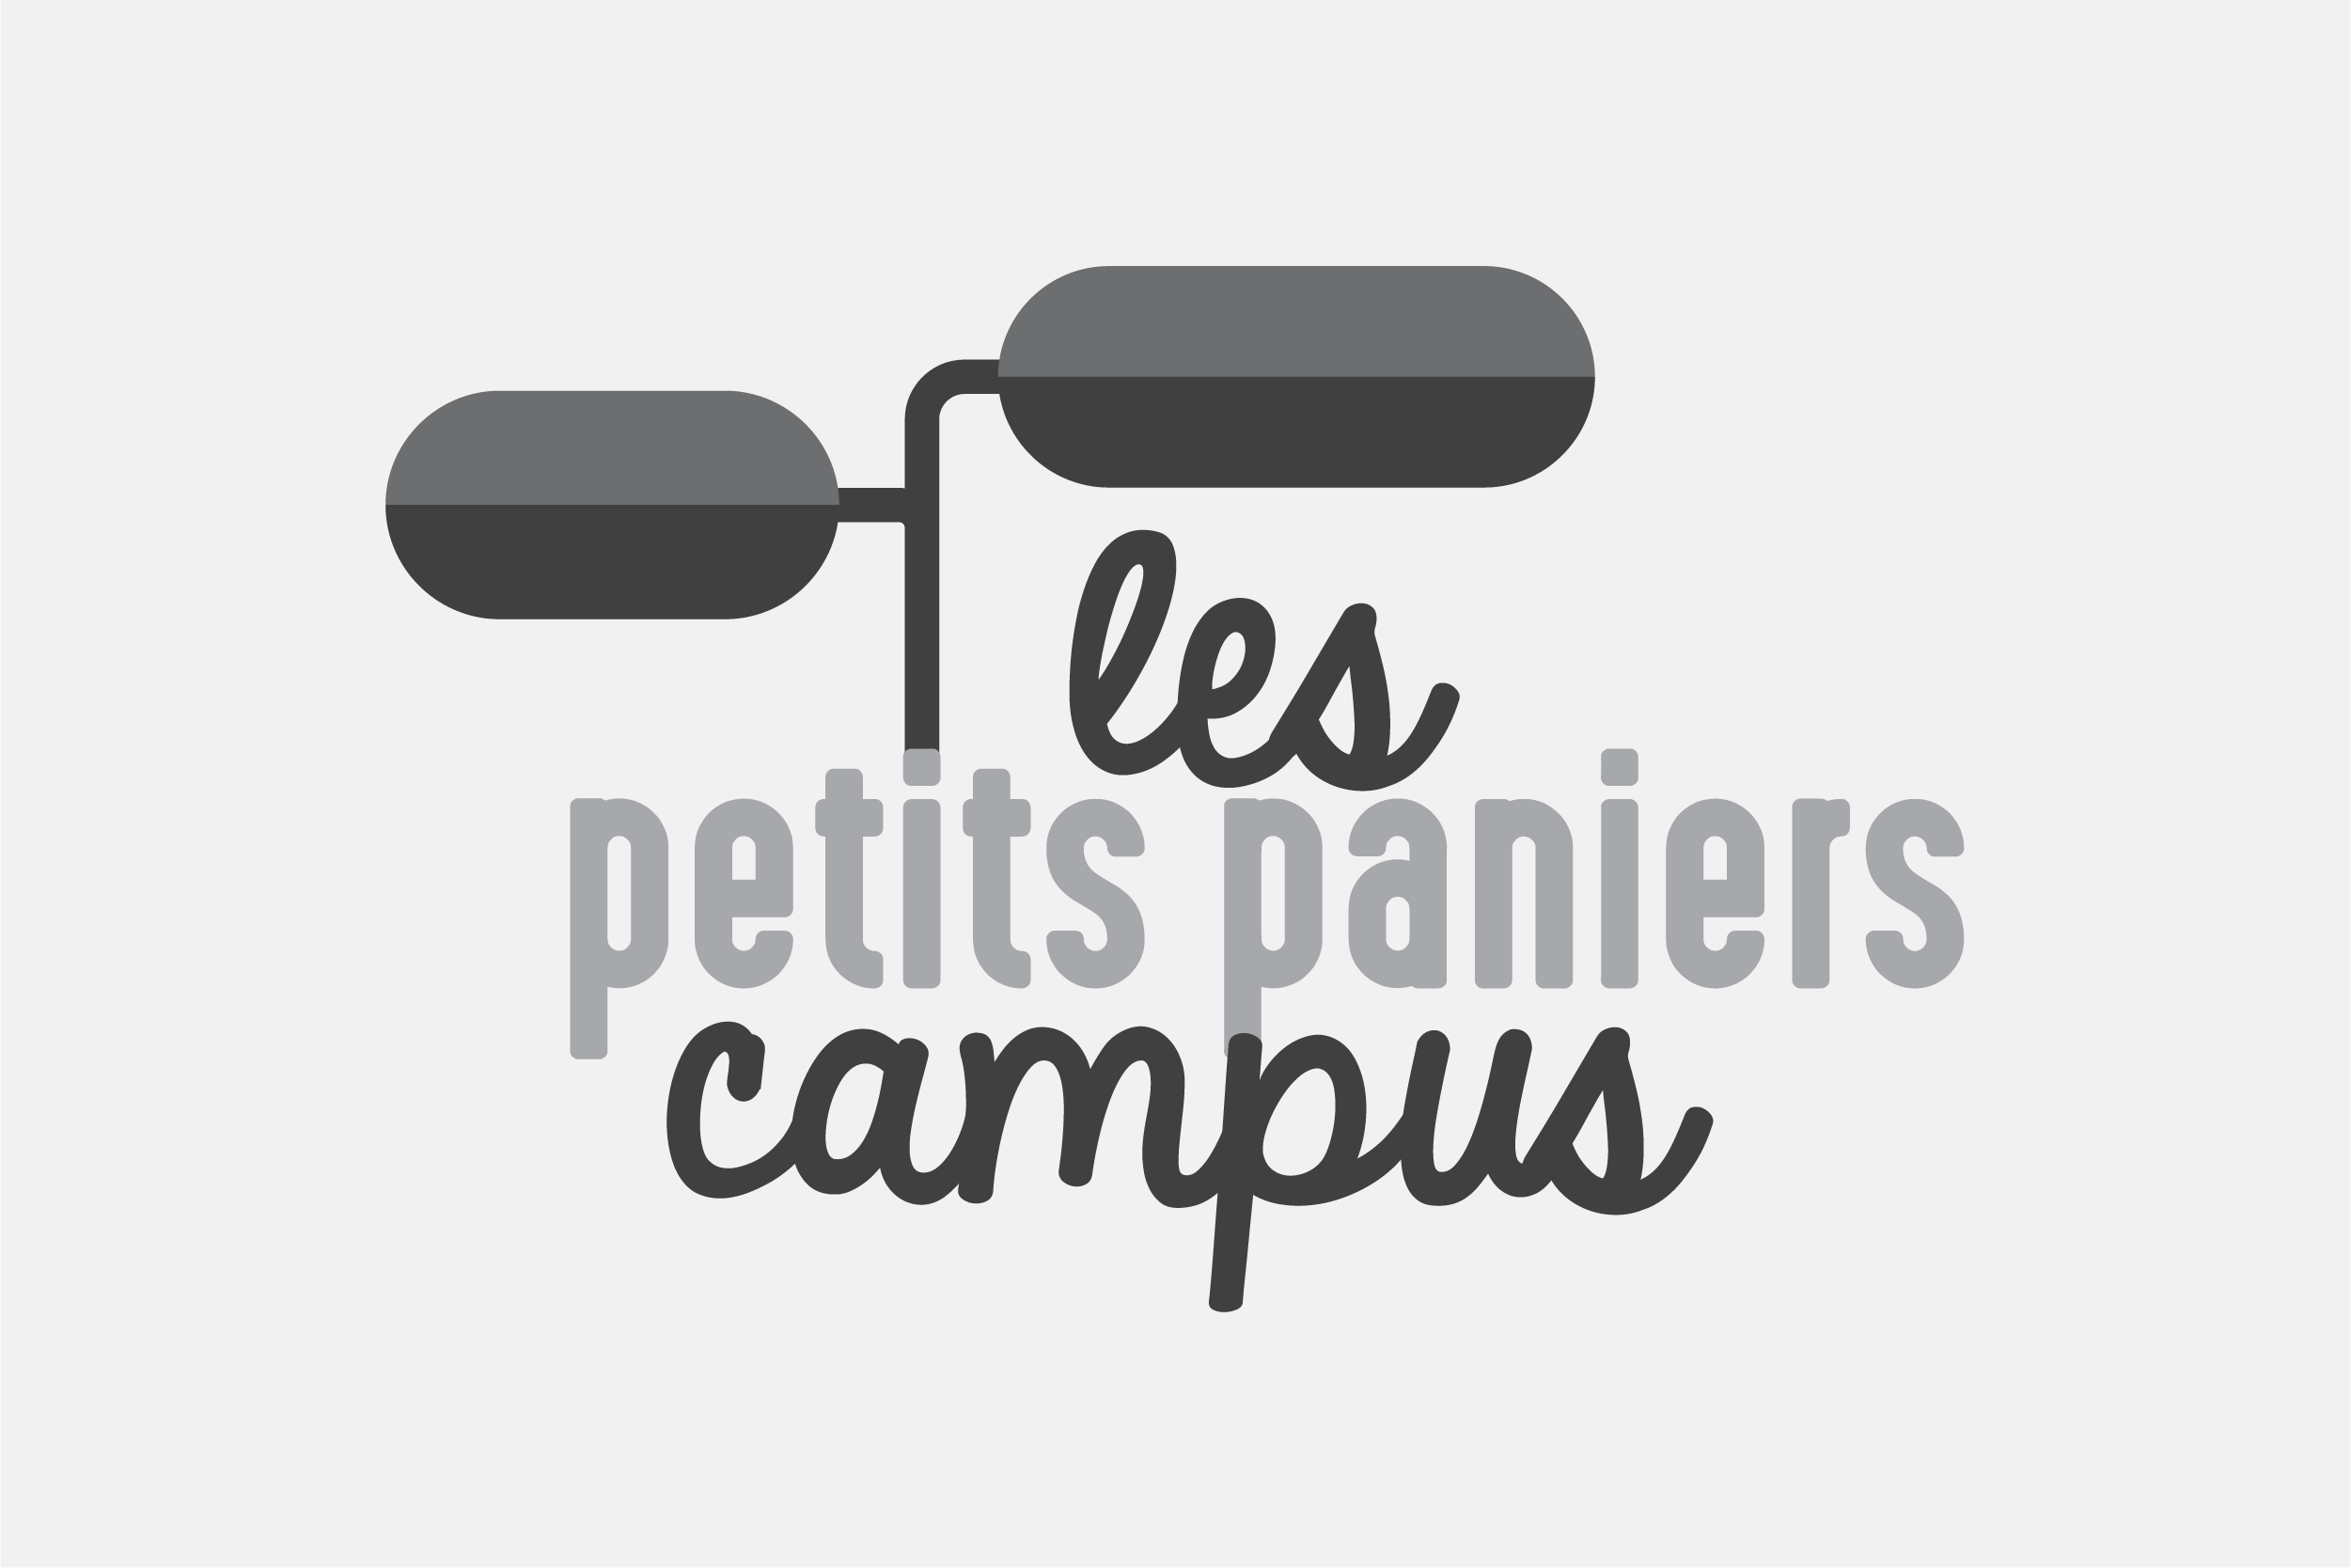 Petitspaniers_logo_gris